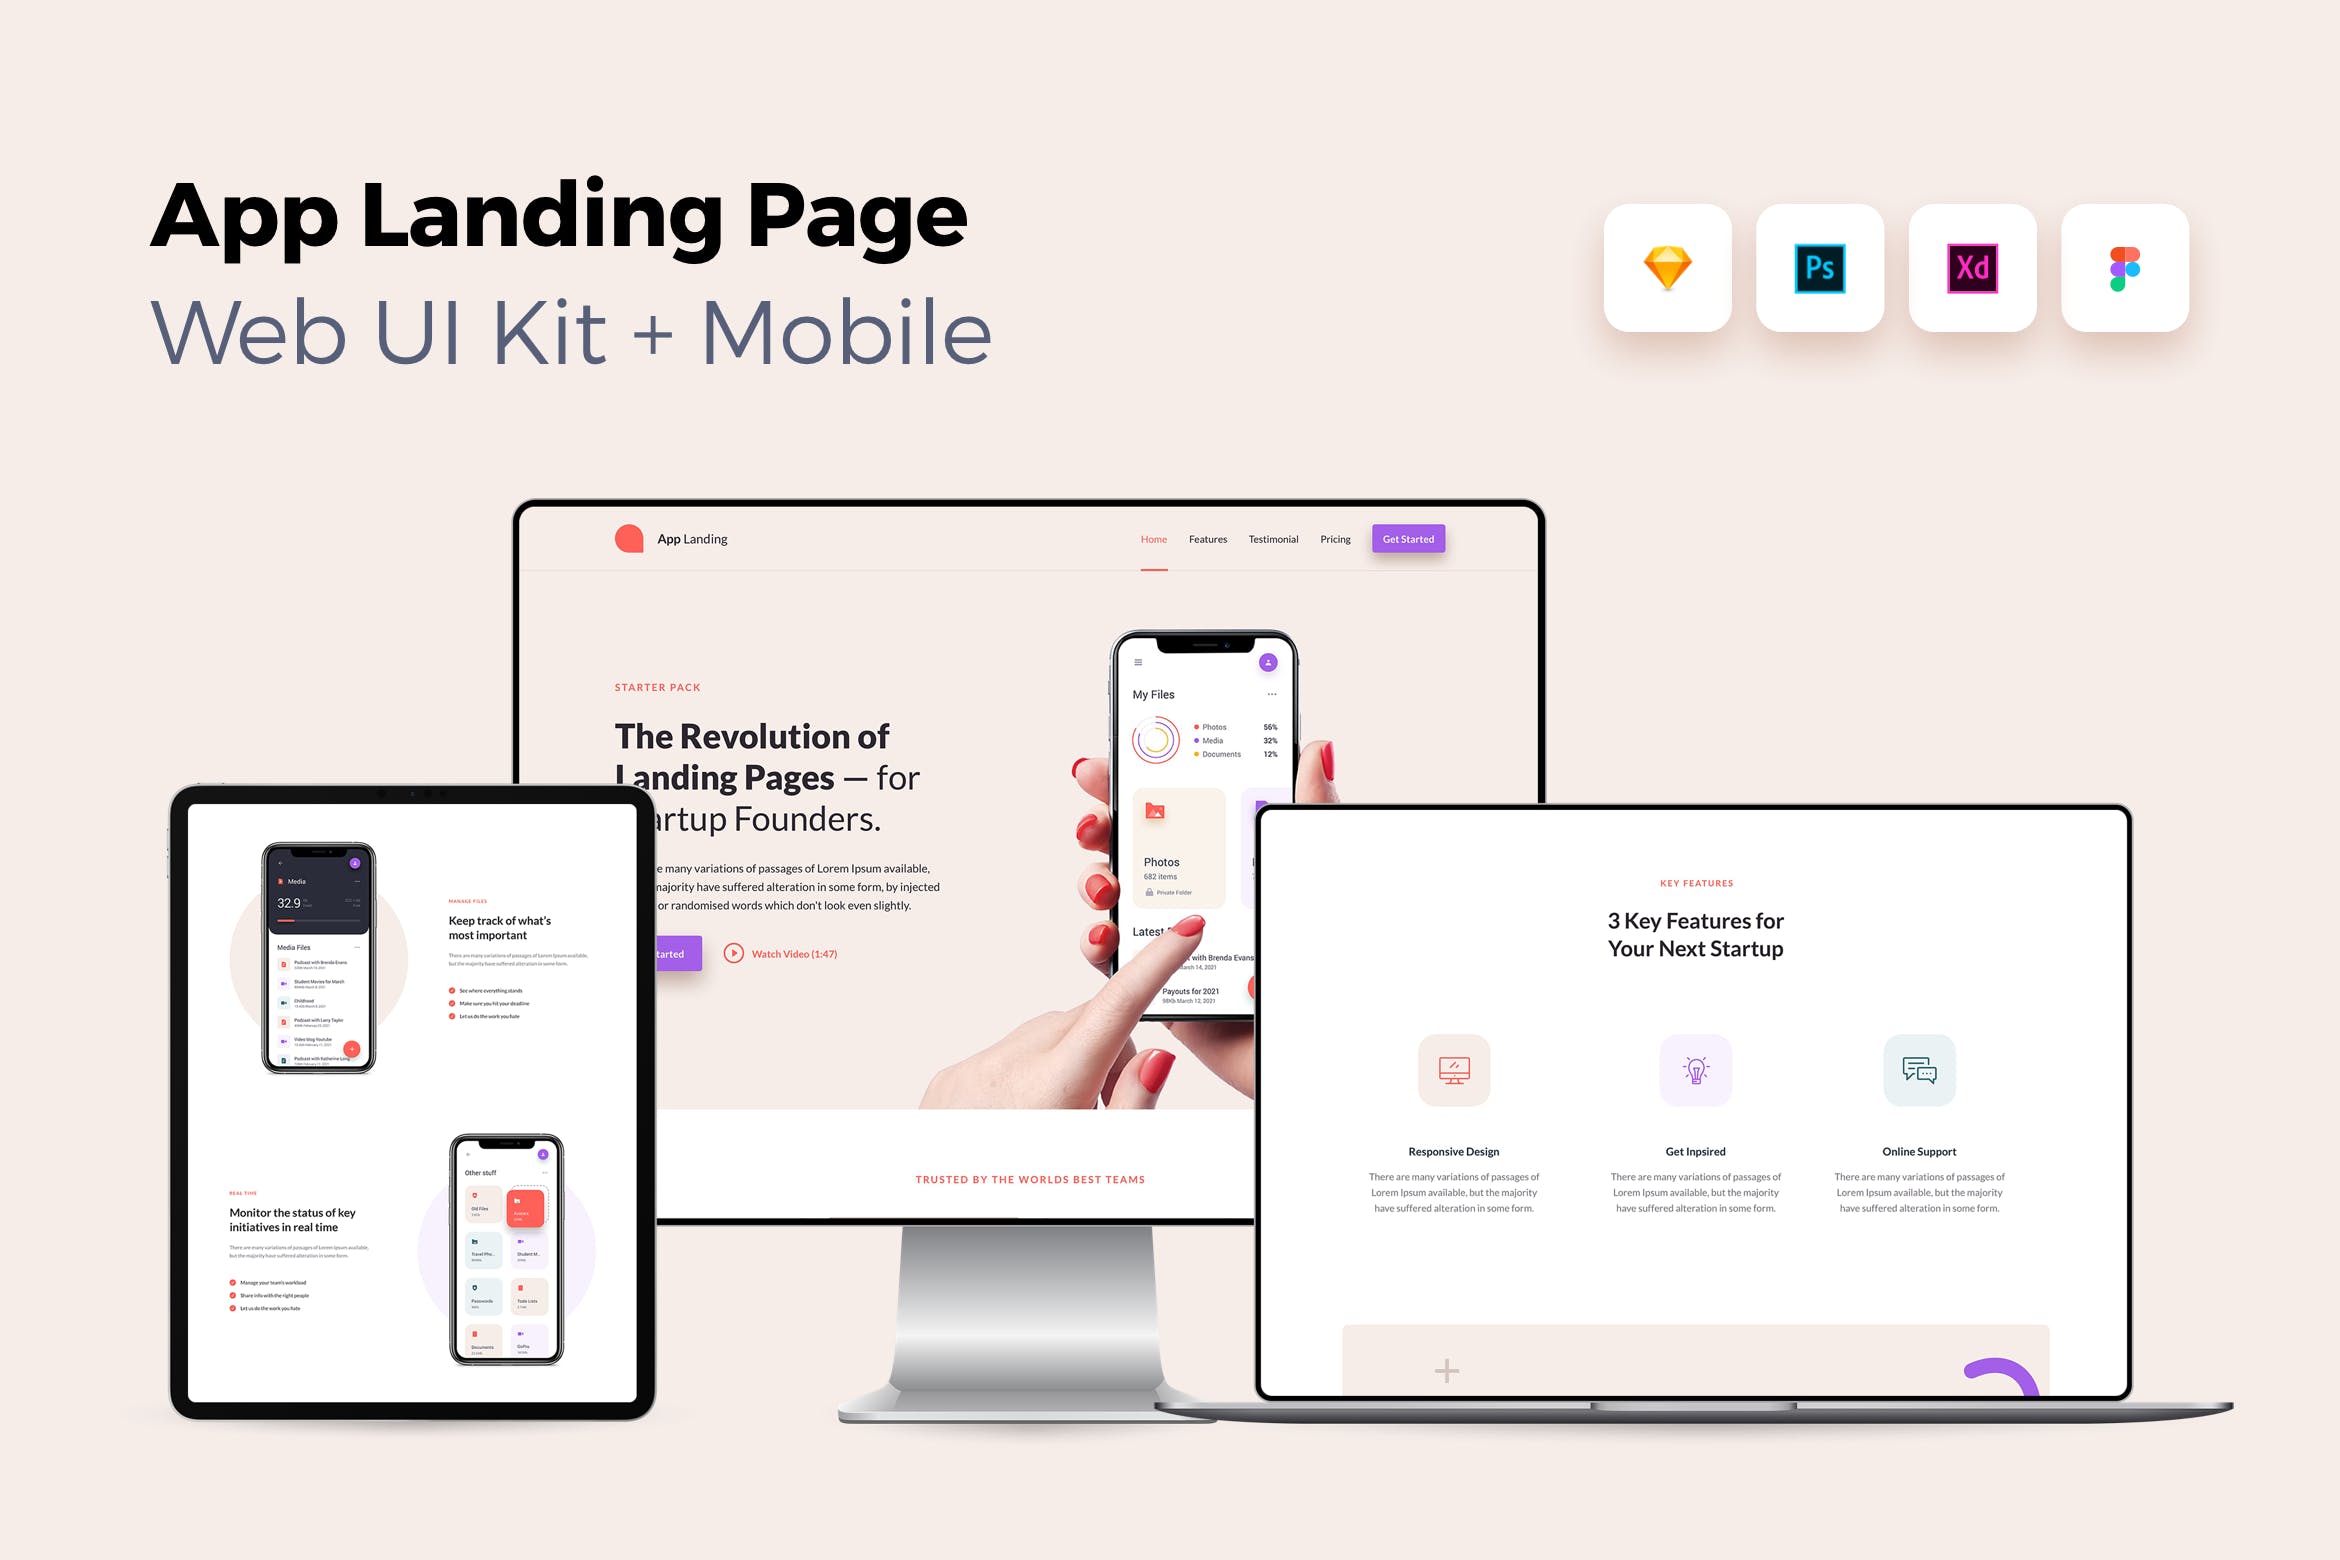 iOS端APP应用产品网站着陆页设计第一素材精选套件v1 iOS App Landing Page – Web UI Kit + Mobile – 1插图